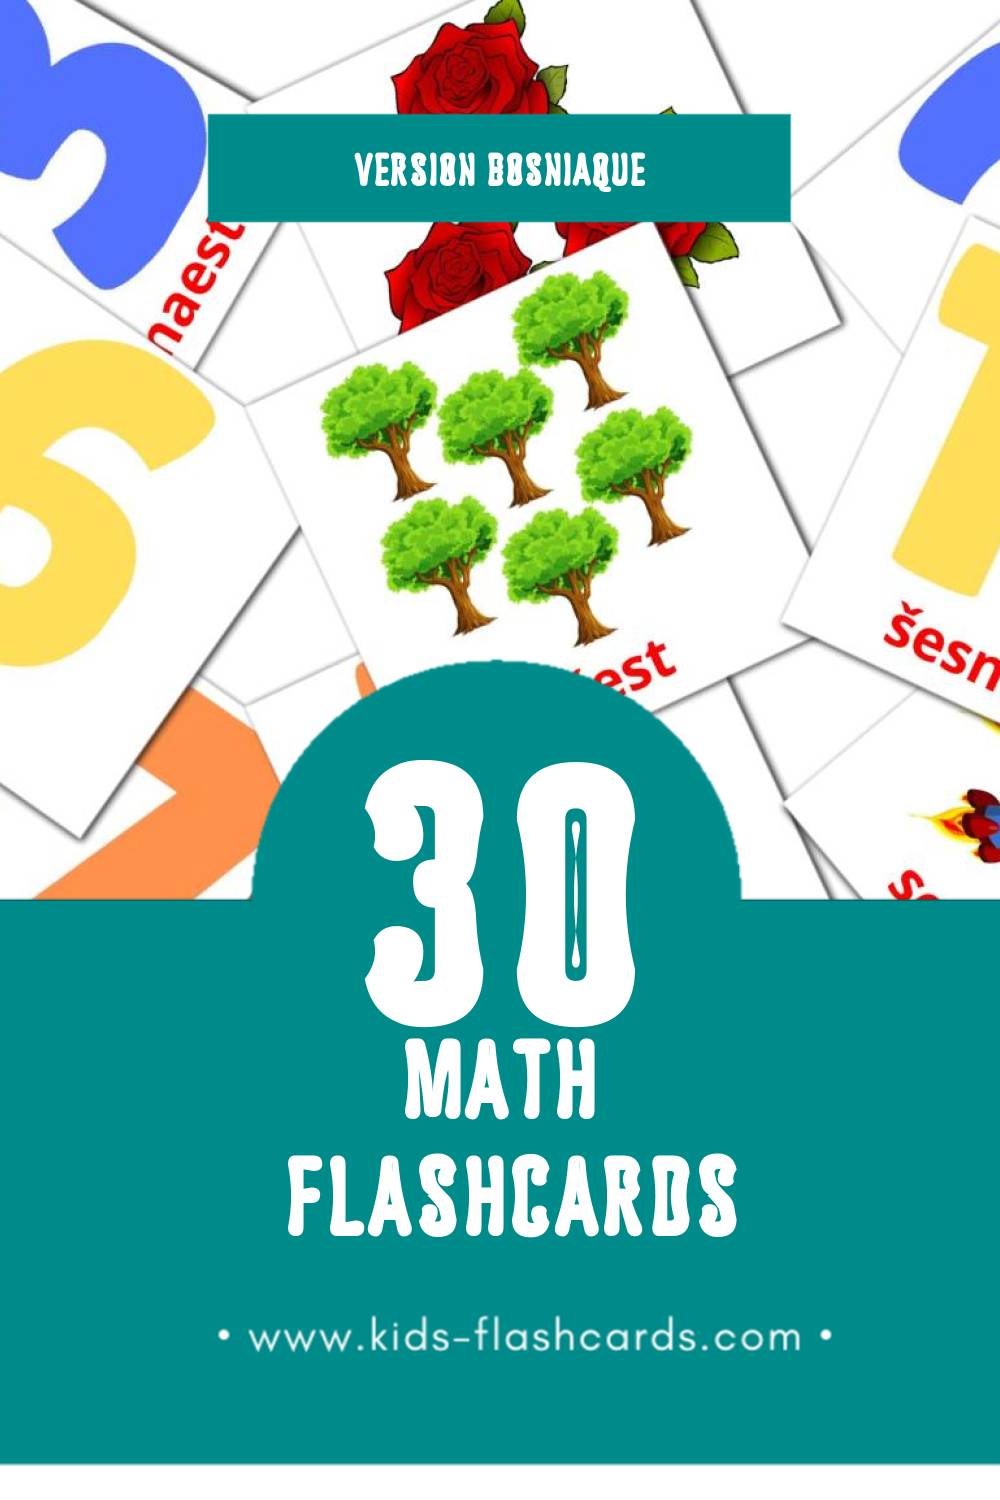 Flashcards Visual Матхс pour les tout-petits (20 cartes en Bosniaque)